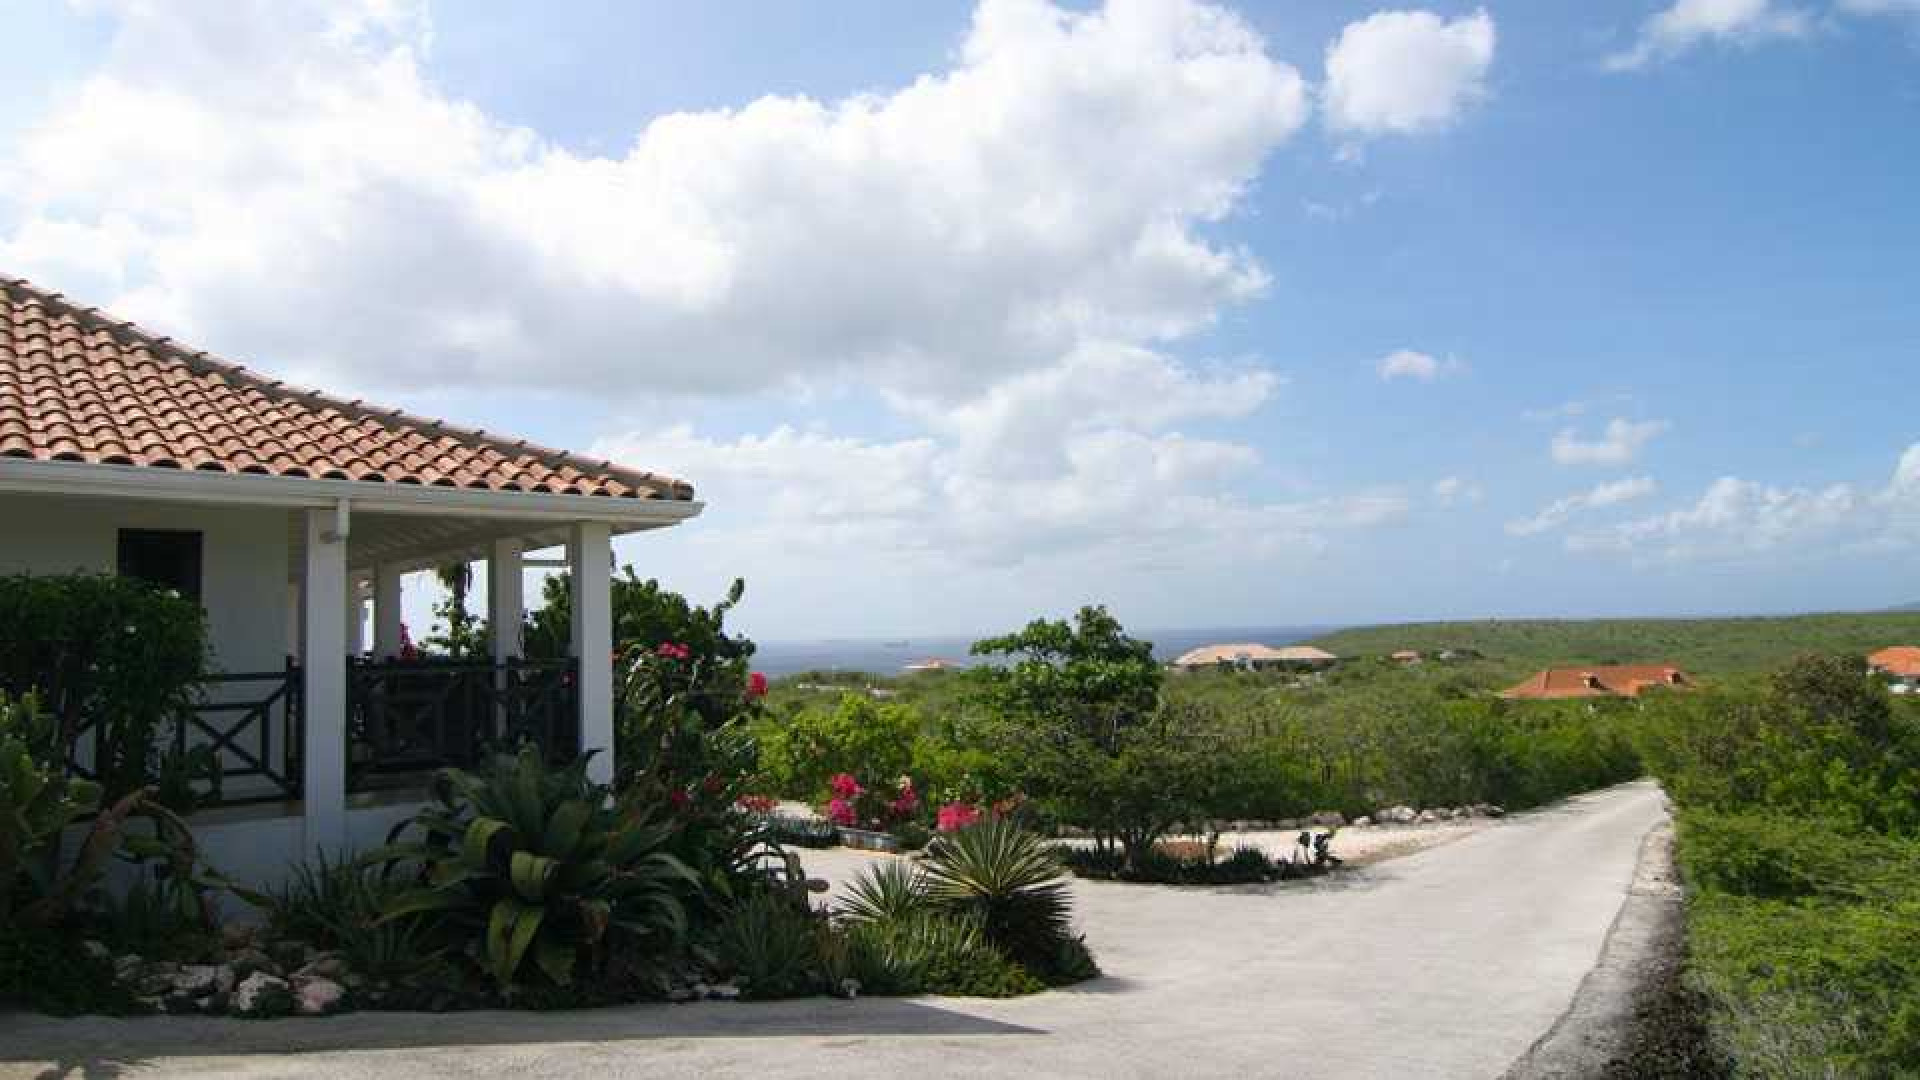 Barry Hay zet zijn miljoenenvilla op Curacao te koop. Zie foto's 12